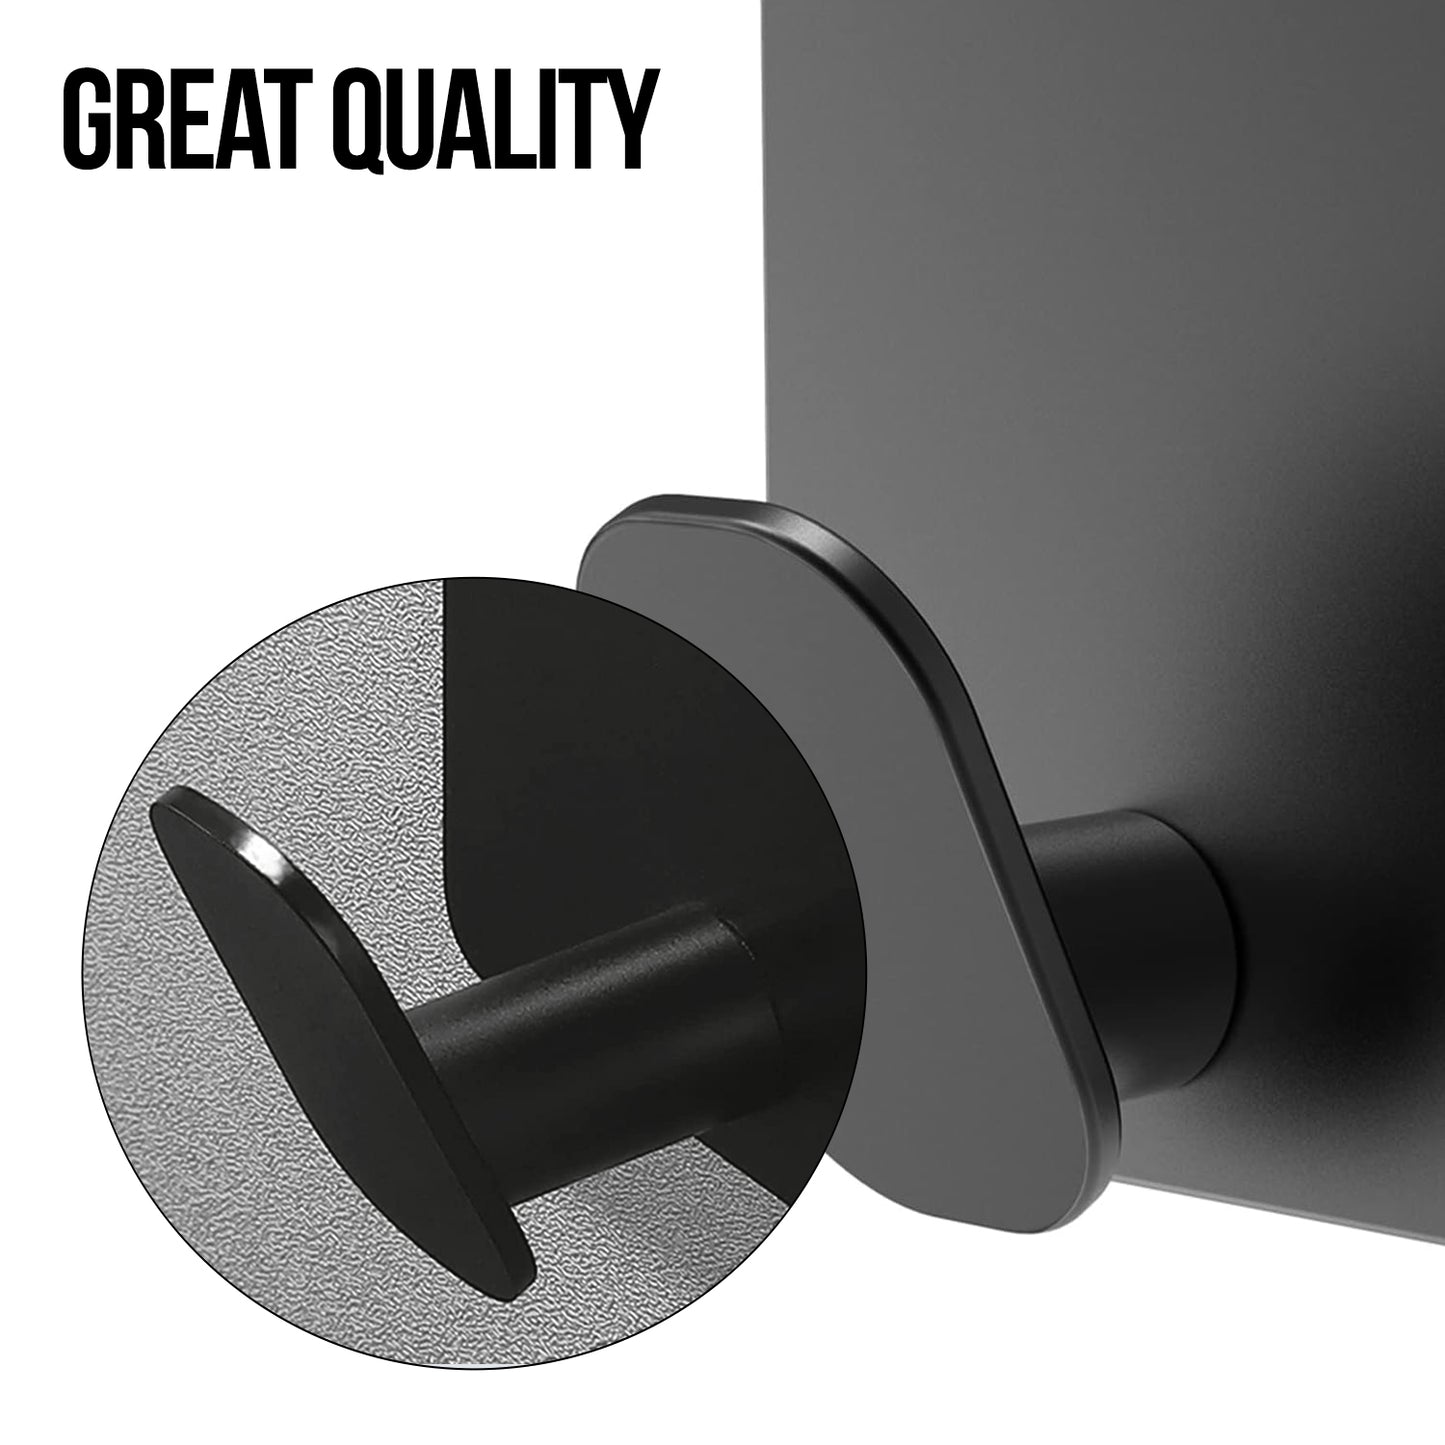 Adhesive Wall Hooks Waterproof Stainless Steel Hooks for Hanging Coat, Hat, Towel Robe Hook Rack Wall Mount- Bathroom and Bedroom 4-Packs